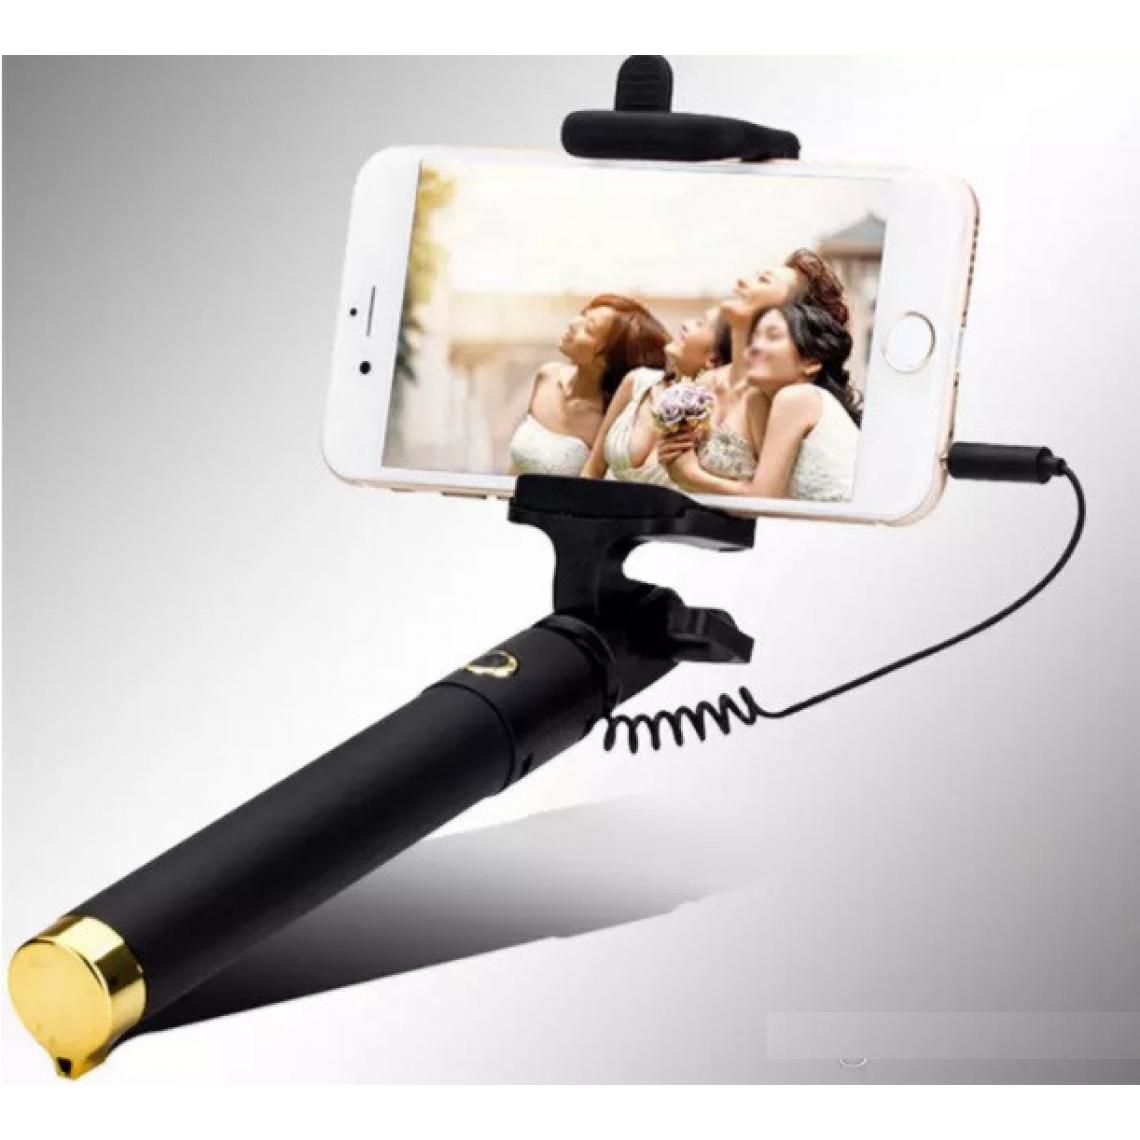 Shot - Perche Selfie Metal pour OPPO Find X Smartphone avec Cable Jack Selfie Stick Android IOS Reglable Bouton Photo (OR) - Autres accessoires smartphone